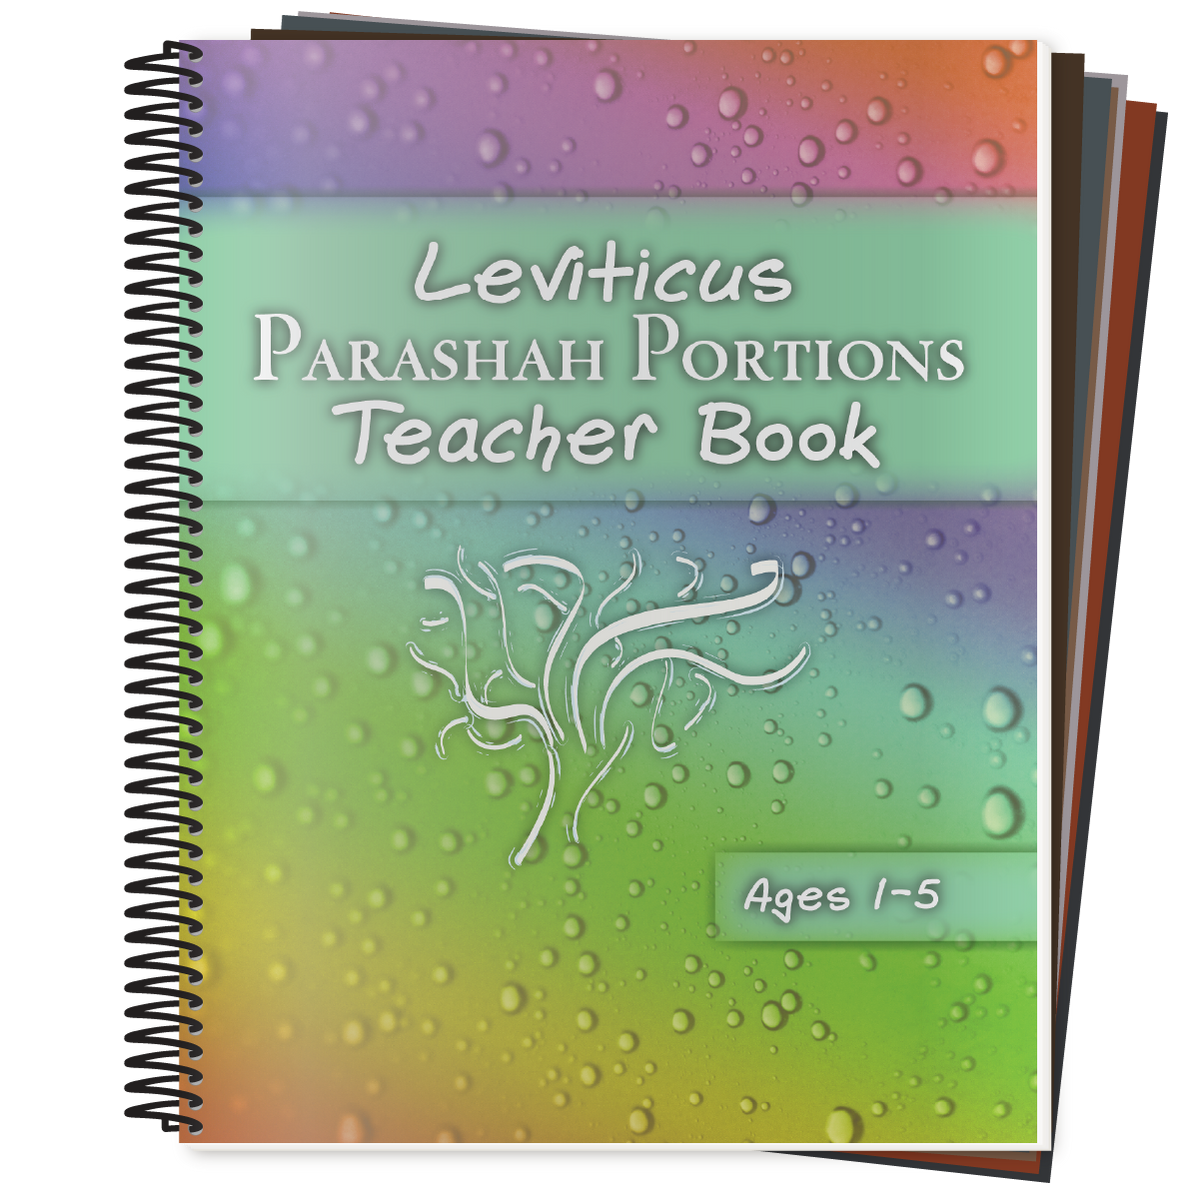 Leviticus - Parashah Portions Teacher Book (STBM Bundle) (Ages 1-5)